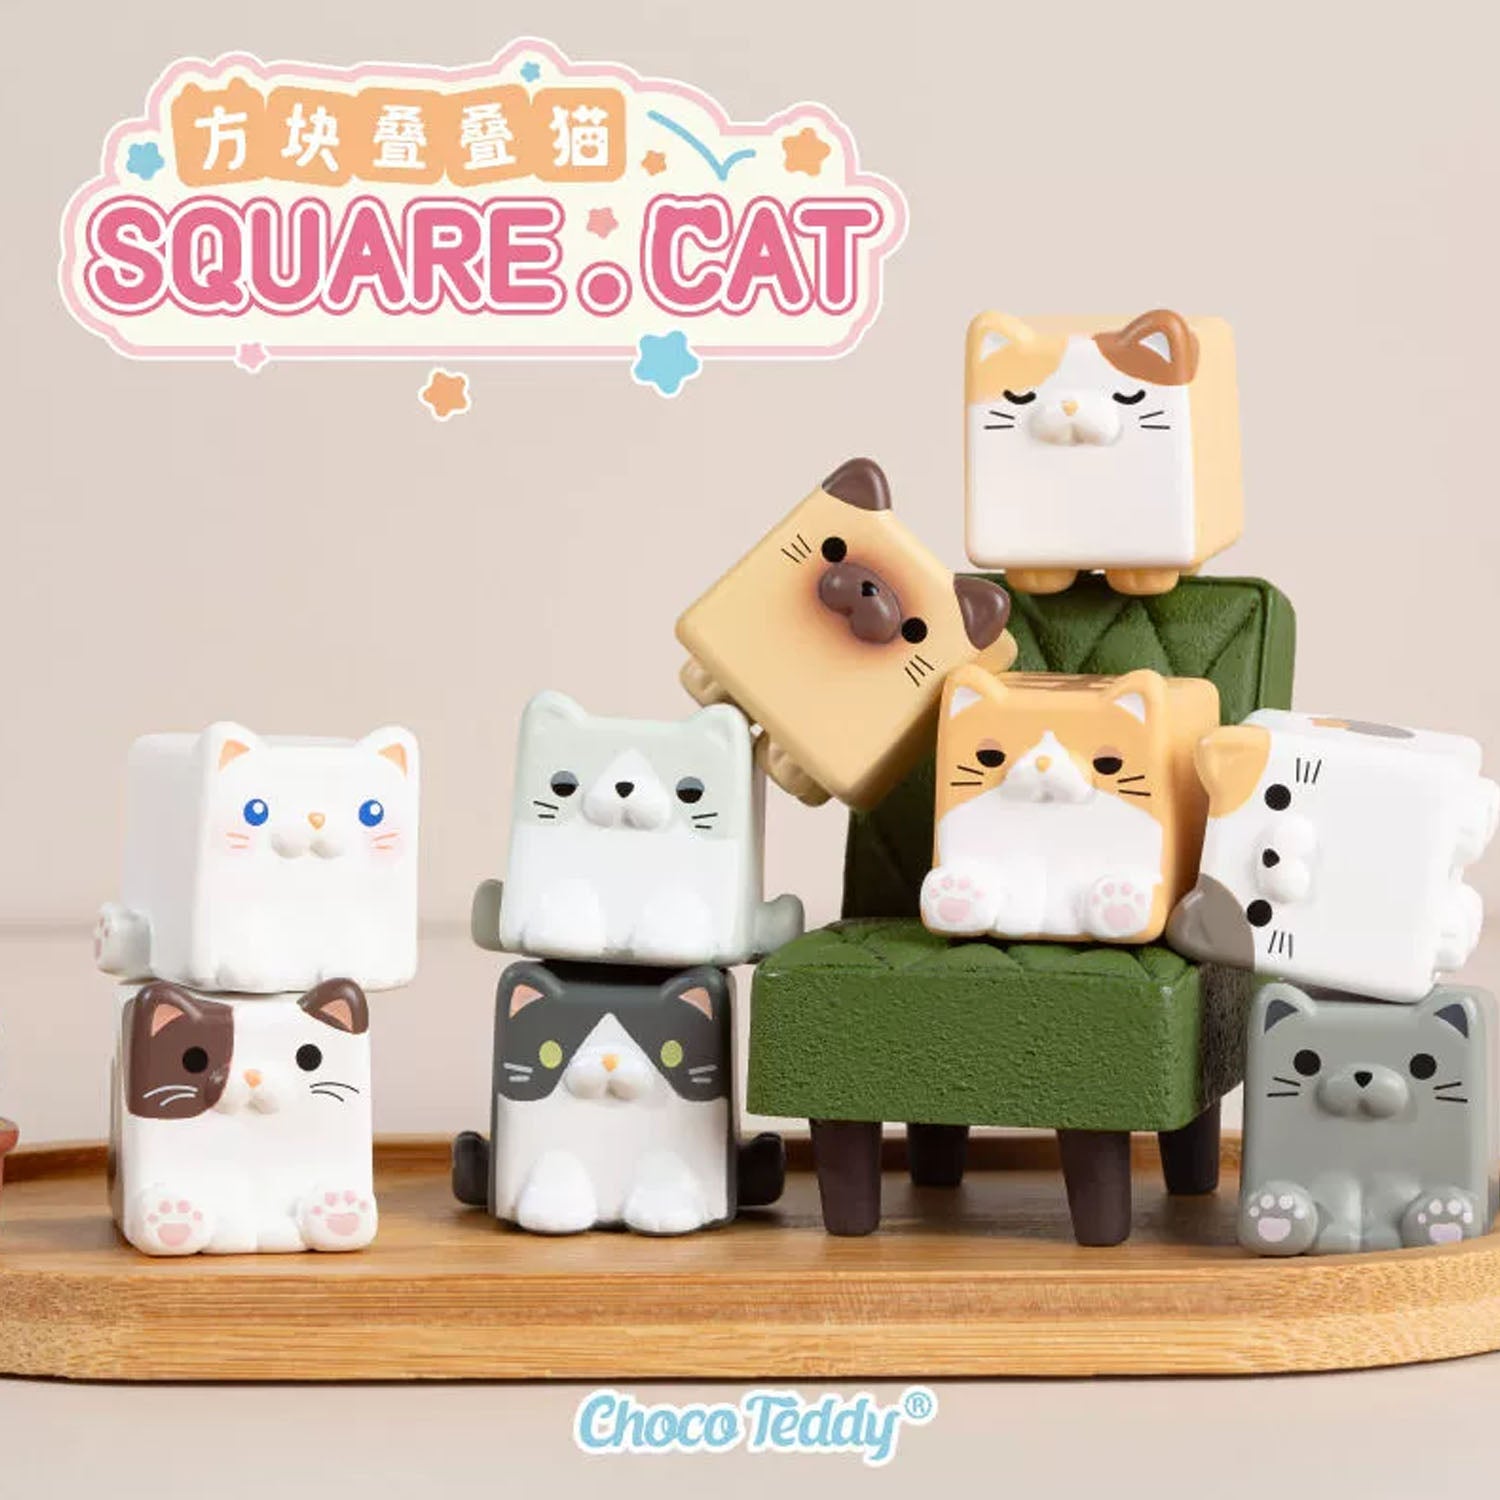 Square Cat Bean Series Blind Bag